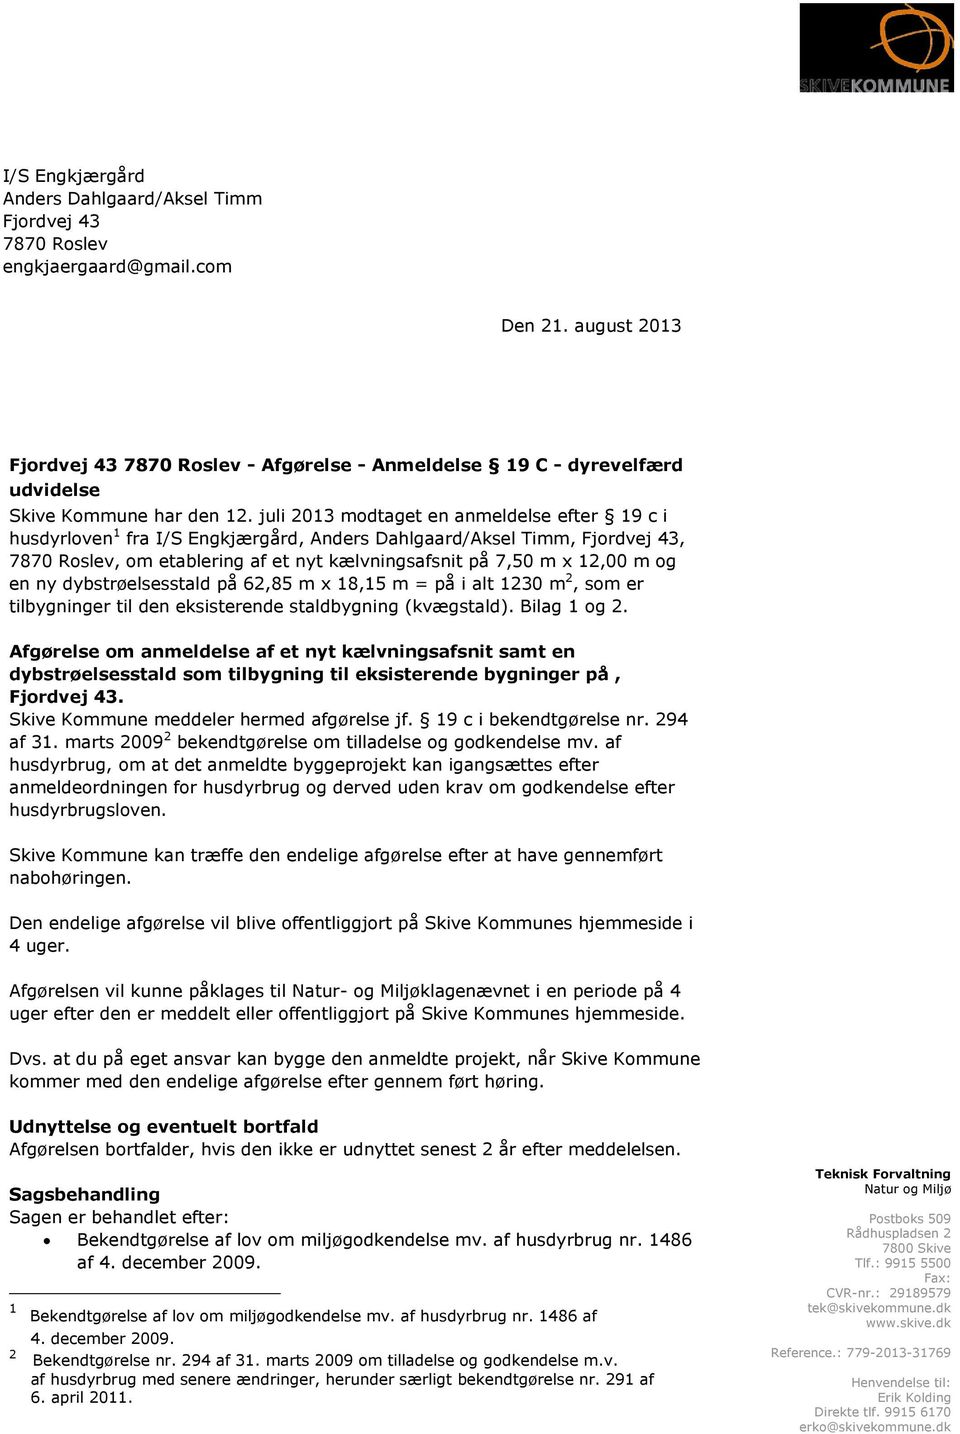 juli 2013 modtaget en anmeldelse efter 19 c i husdyrloven 1 fra I/S Engkjærgård, Anders Dahlgaard/Aksel Timm, Fjordvej 43, 7870 Roslev, om etablering af et nyt kælvningsafsnit på 7,50 m x 12,00 m og